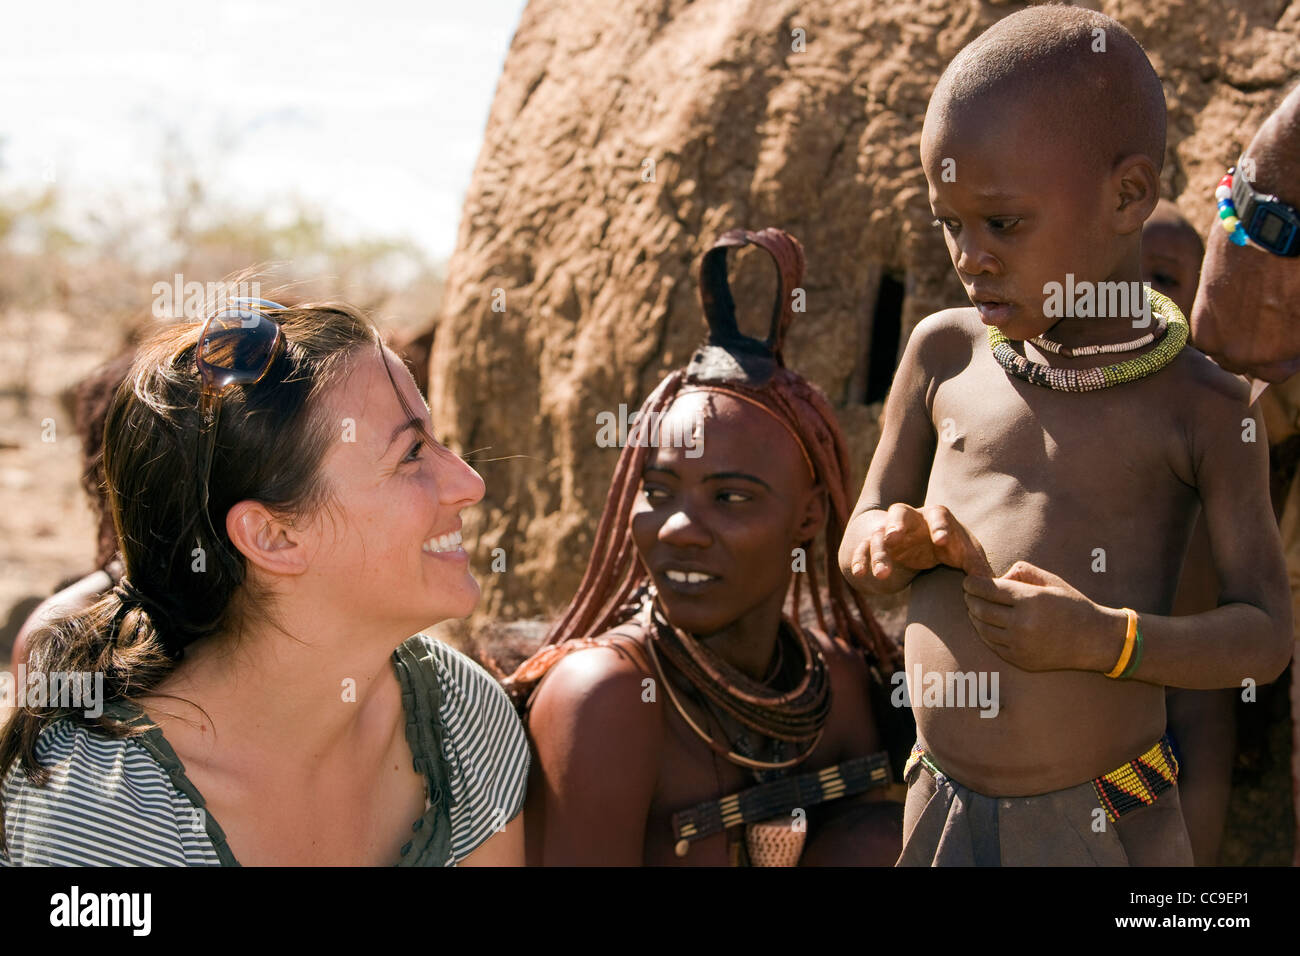 Jeune femme en interaction avec l'enfant Himba - Orupembe Conservancy - Kaokoland, Namibie Banque D'Images